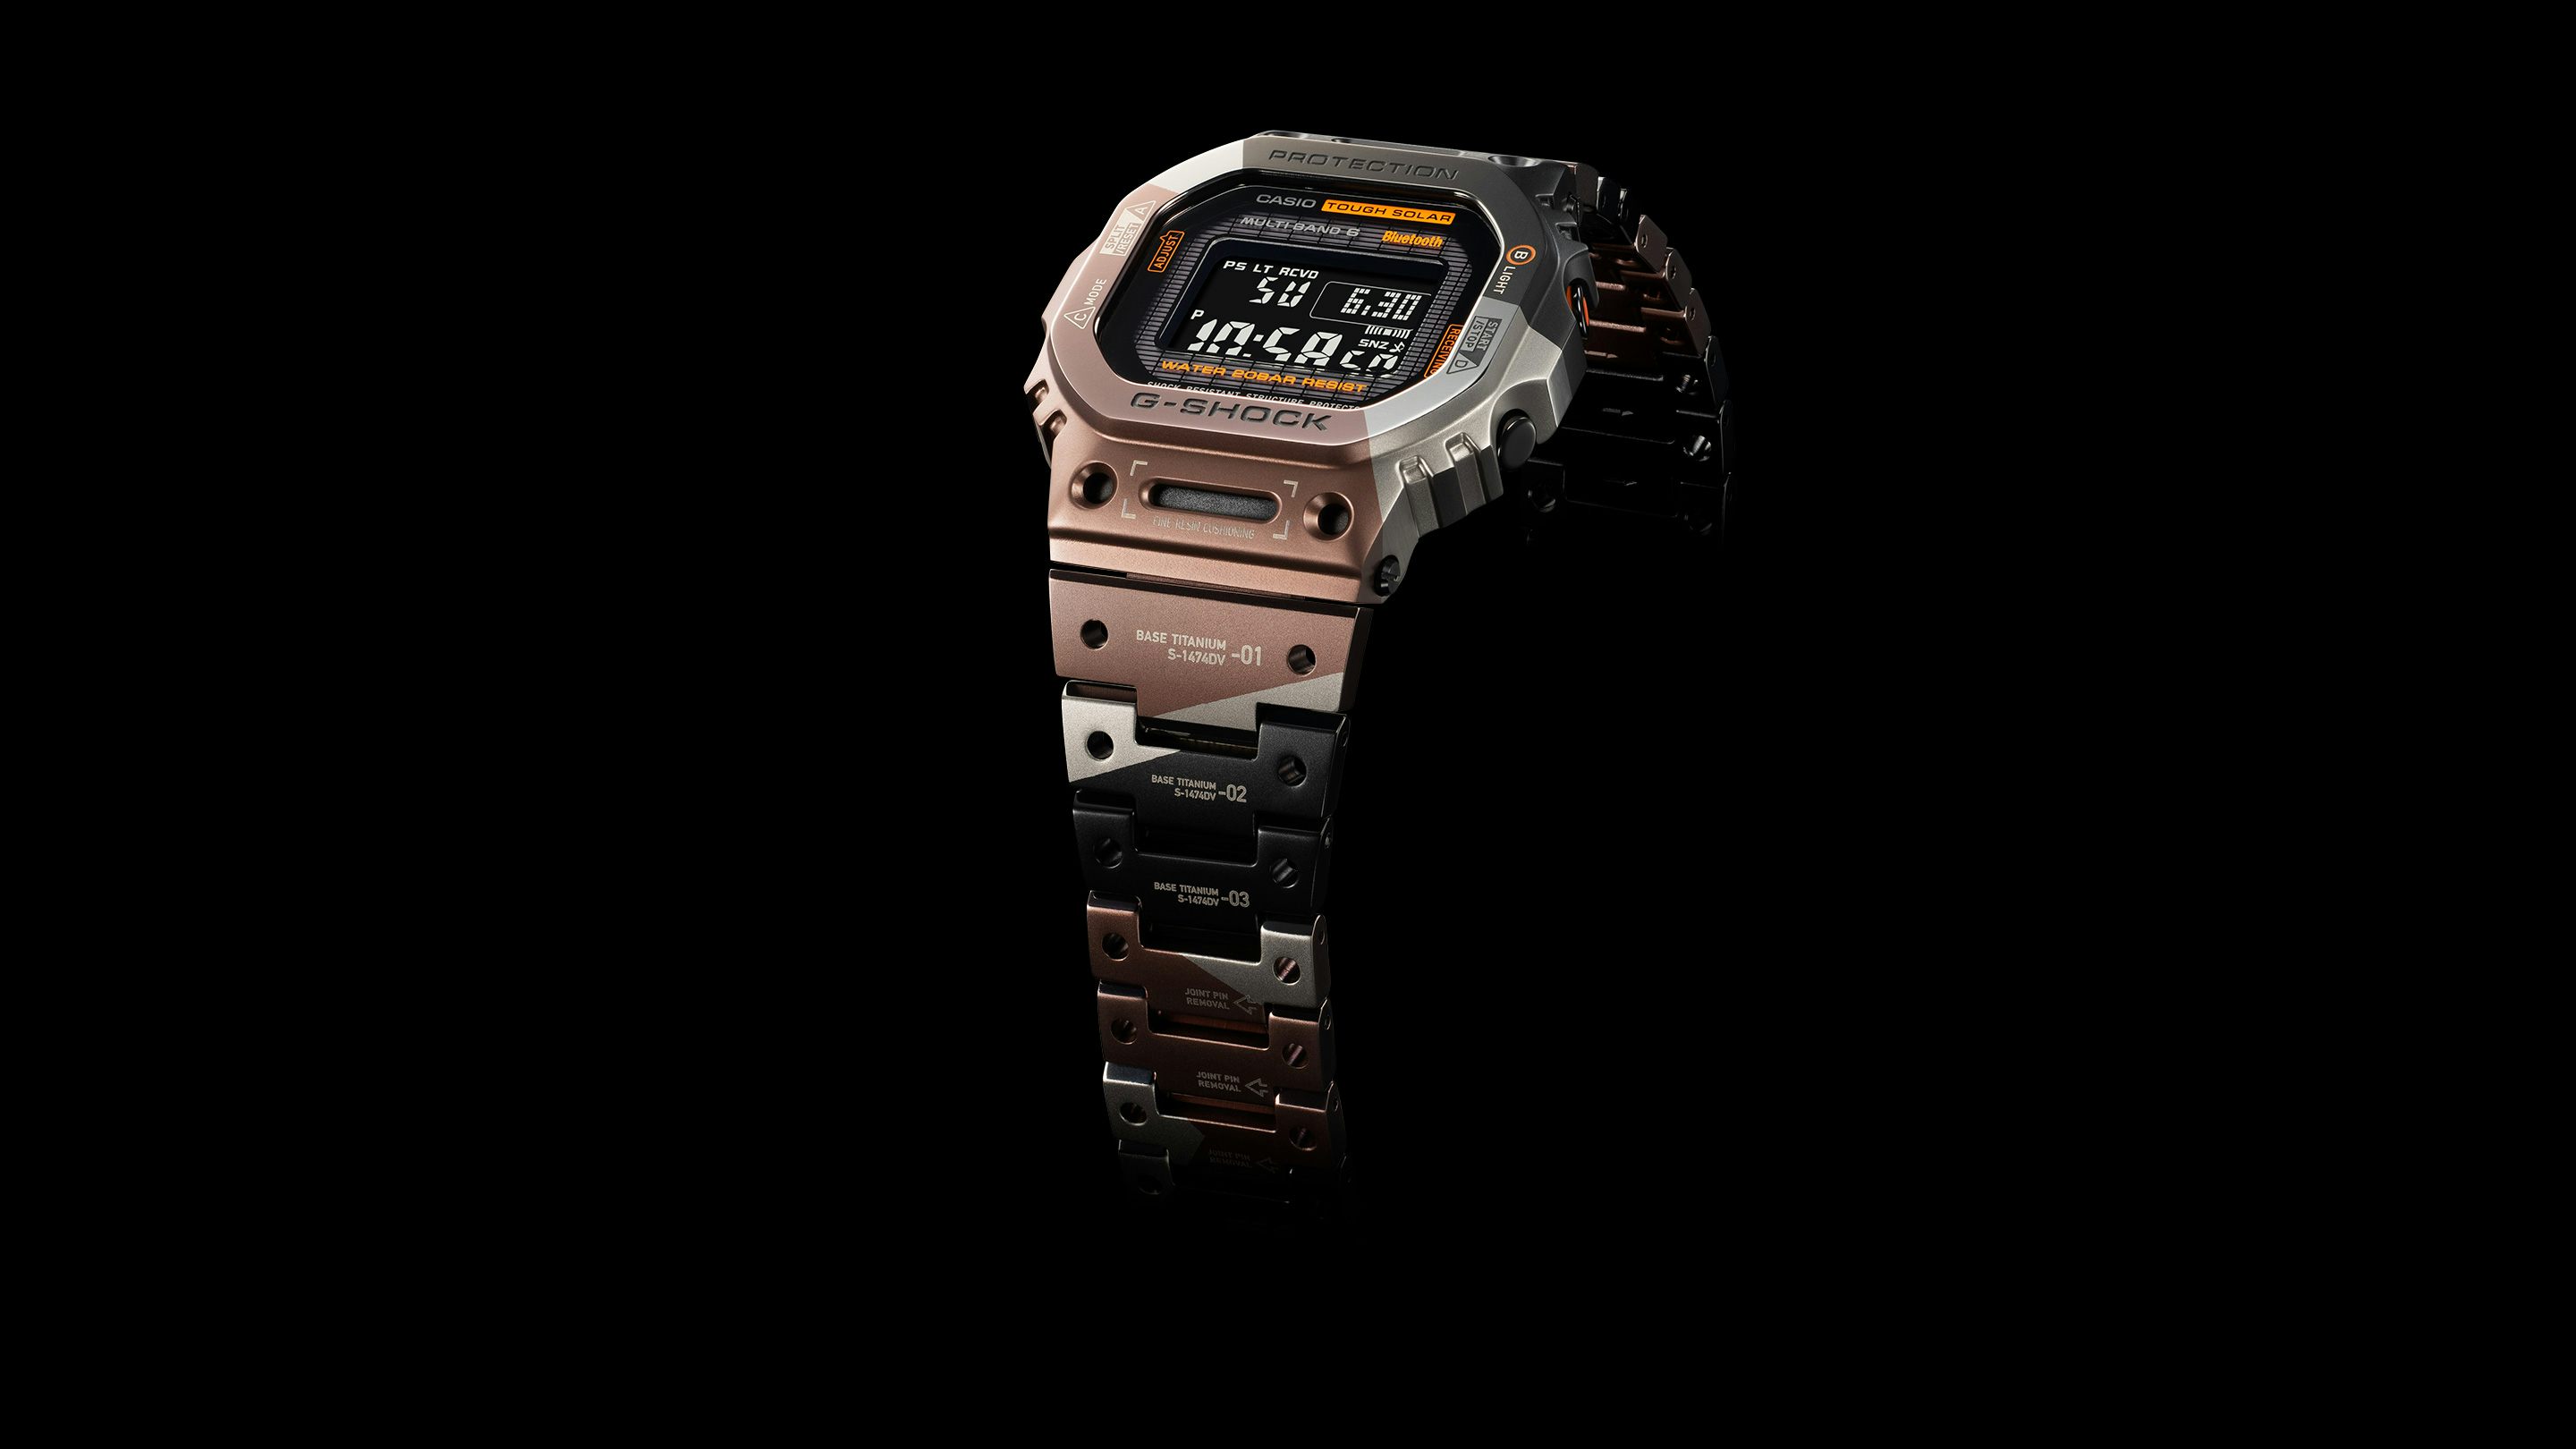 Casio Men G Shock Quartz Resin Sport Watch  G Shock Watches Solar Powered  - Casio - Aliexpress